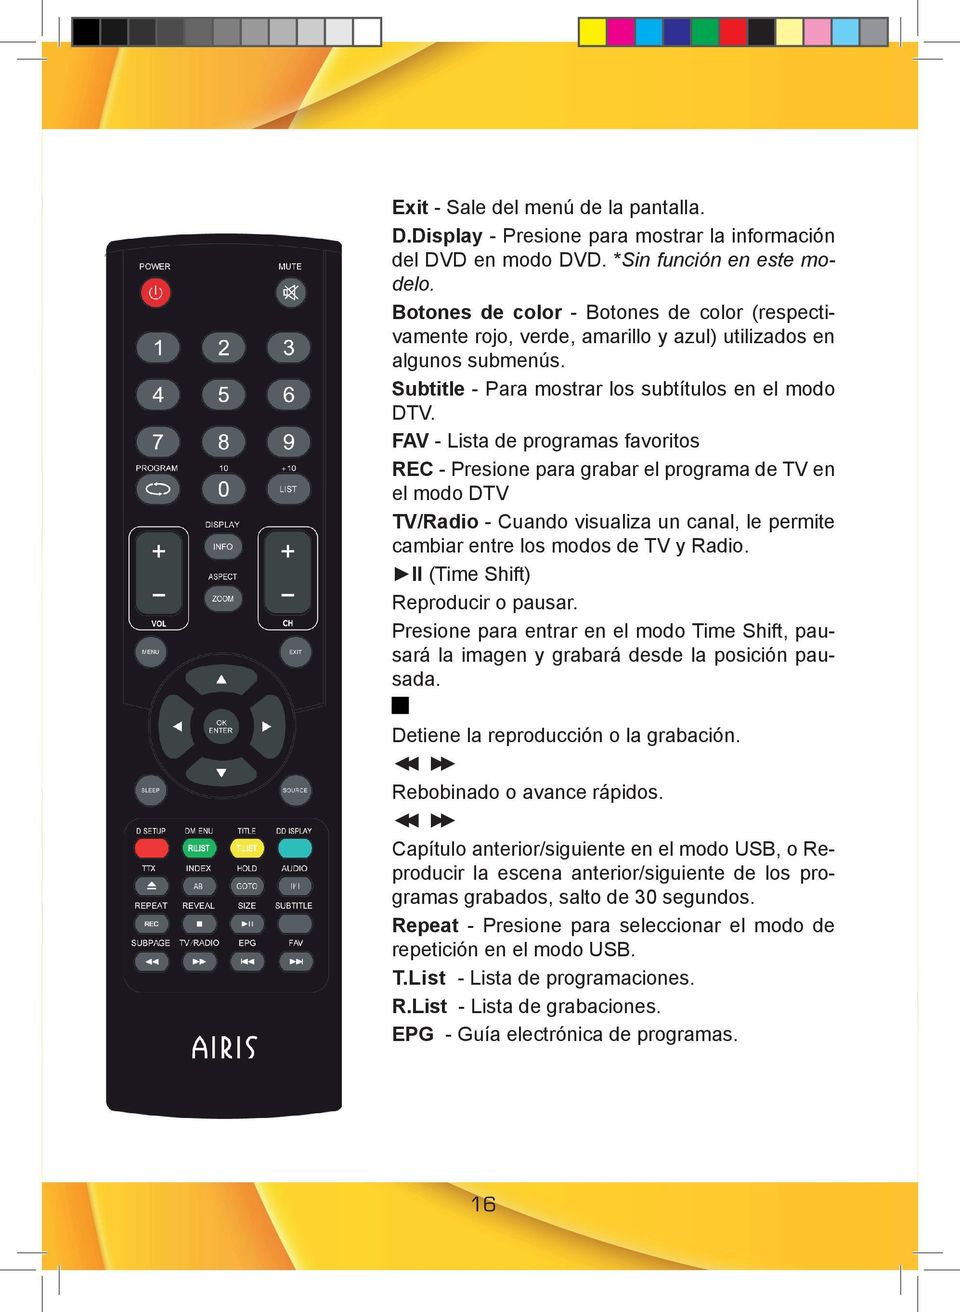 FAV - Lista de programas favoritos REC - Presione para grabar el programa de TV en el modo DTV TV/Radio - Cuando visualiza un canal, le permite cambiar entre los modos de TV y Radio.